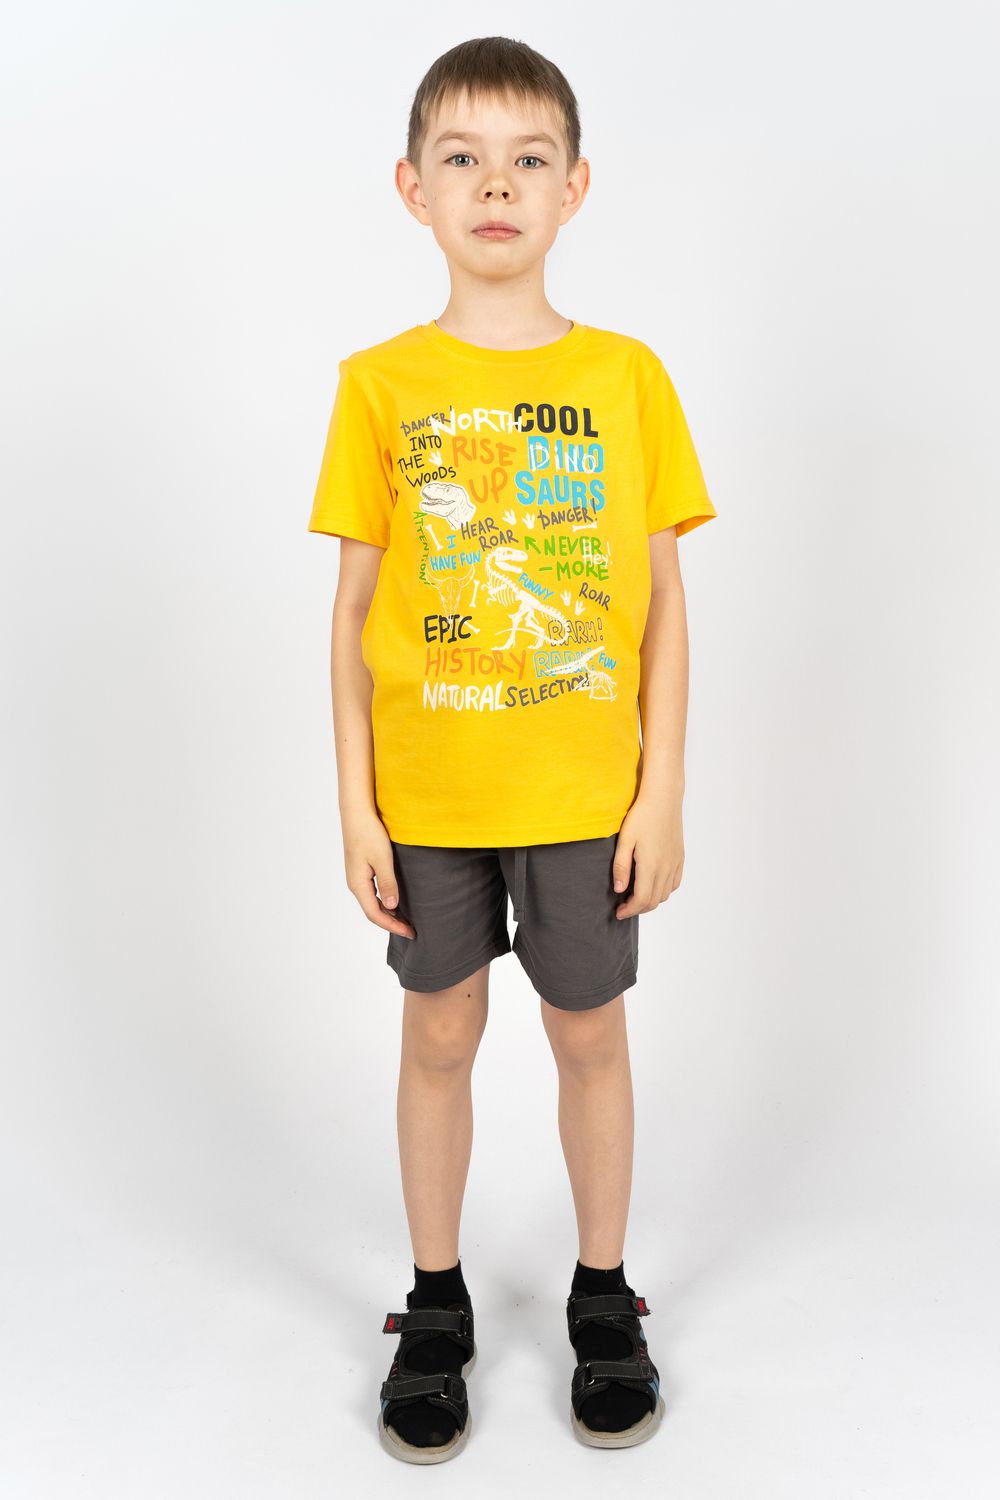 Комплект для мальчика 4292 (футболка + шорты) - желтый/т.серый